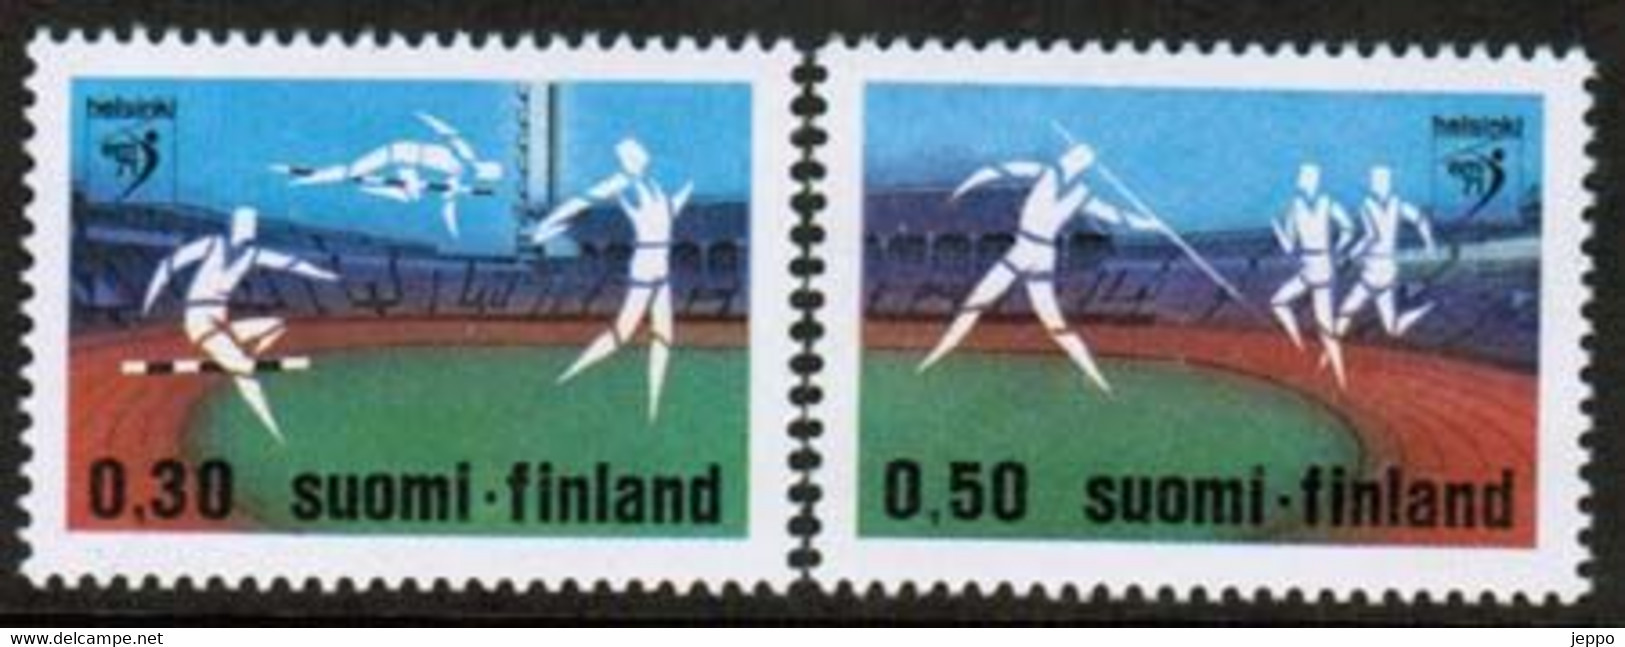 1971 Finland European Athletic Shampionships Complete Set MNH. - Ungebraucht